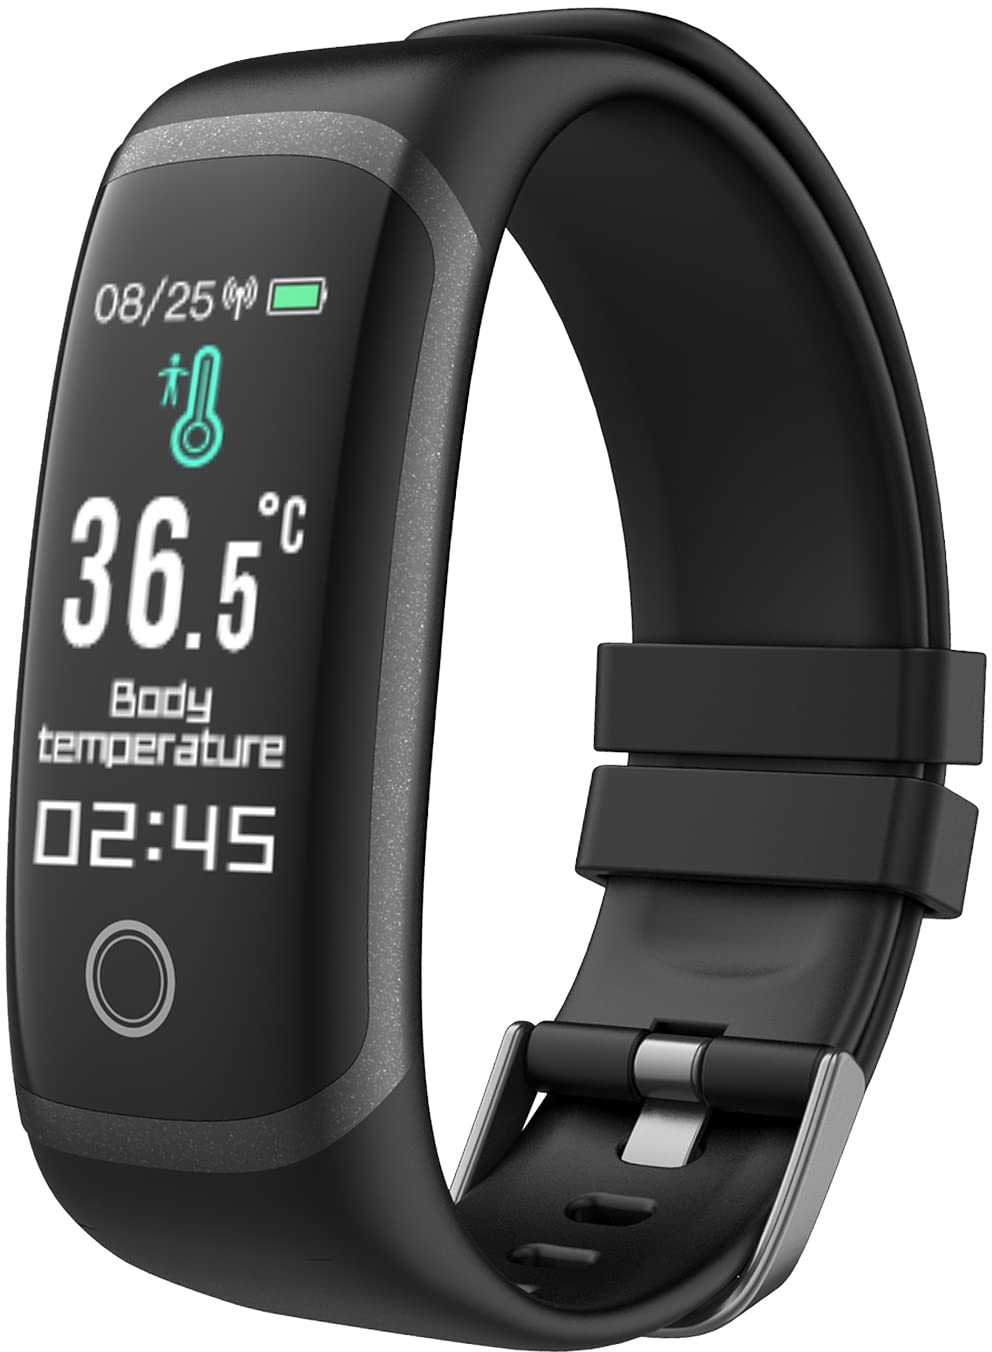 MicLee Damen Herren Fitness Armband Smartwatch mit Pulsmesser Fitness Tracker 0.96 Zoll Farbbildschirm Fitness Uhr Wasserdicht IP67 Aktivitätstracker Schrittzähler Sportuhr Pulsuhren für iOS Android